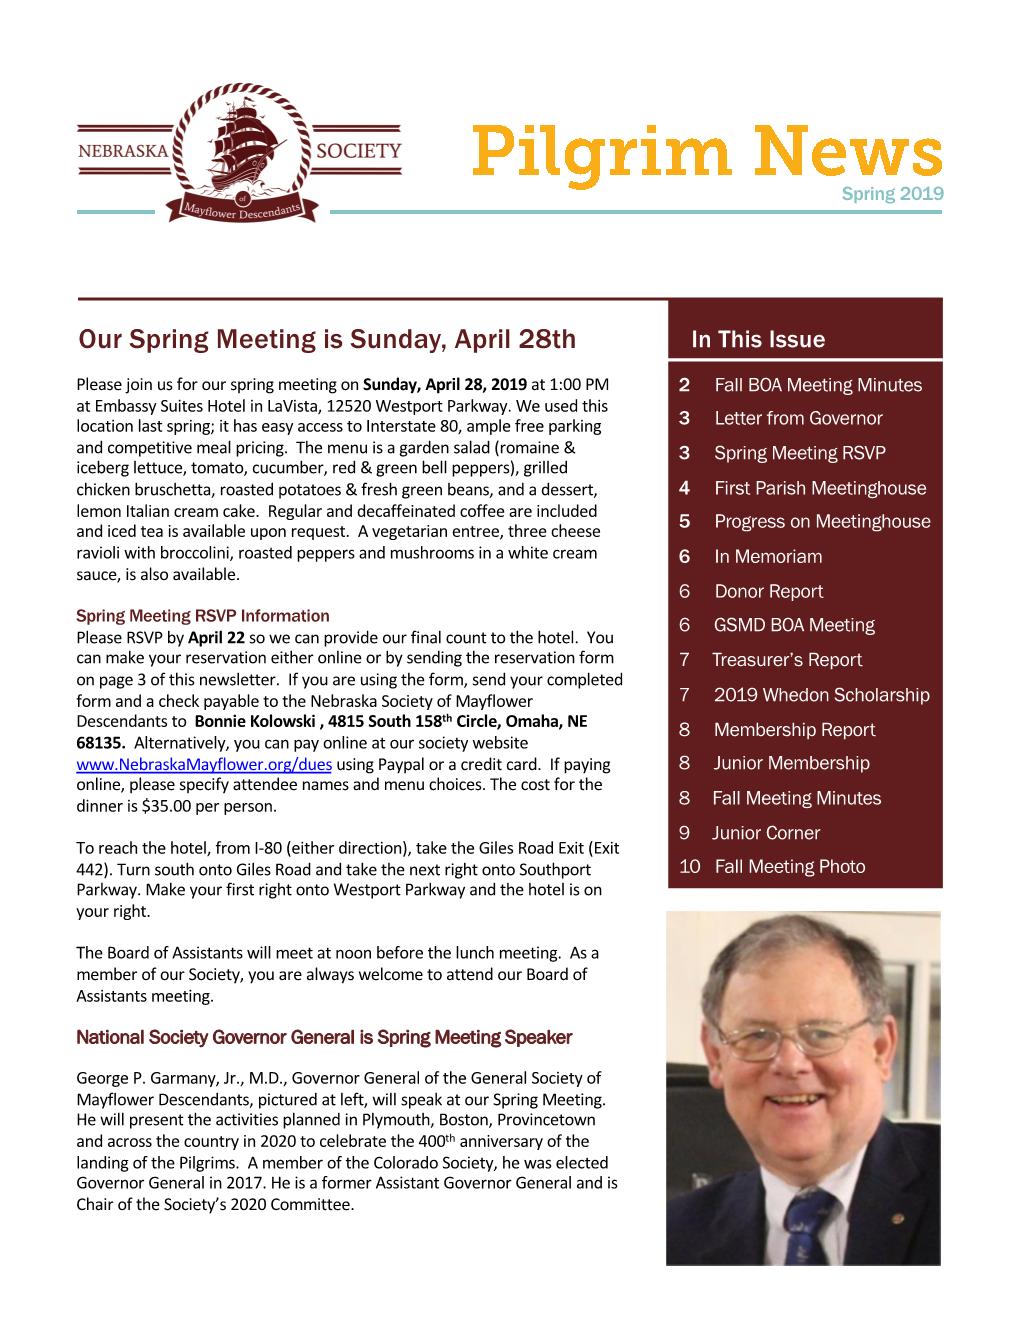 2019 Spring Pilgrim News Final